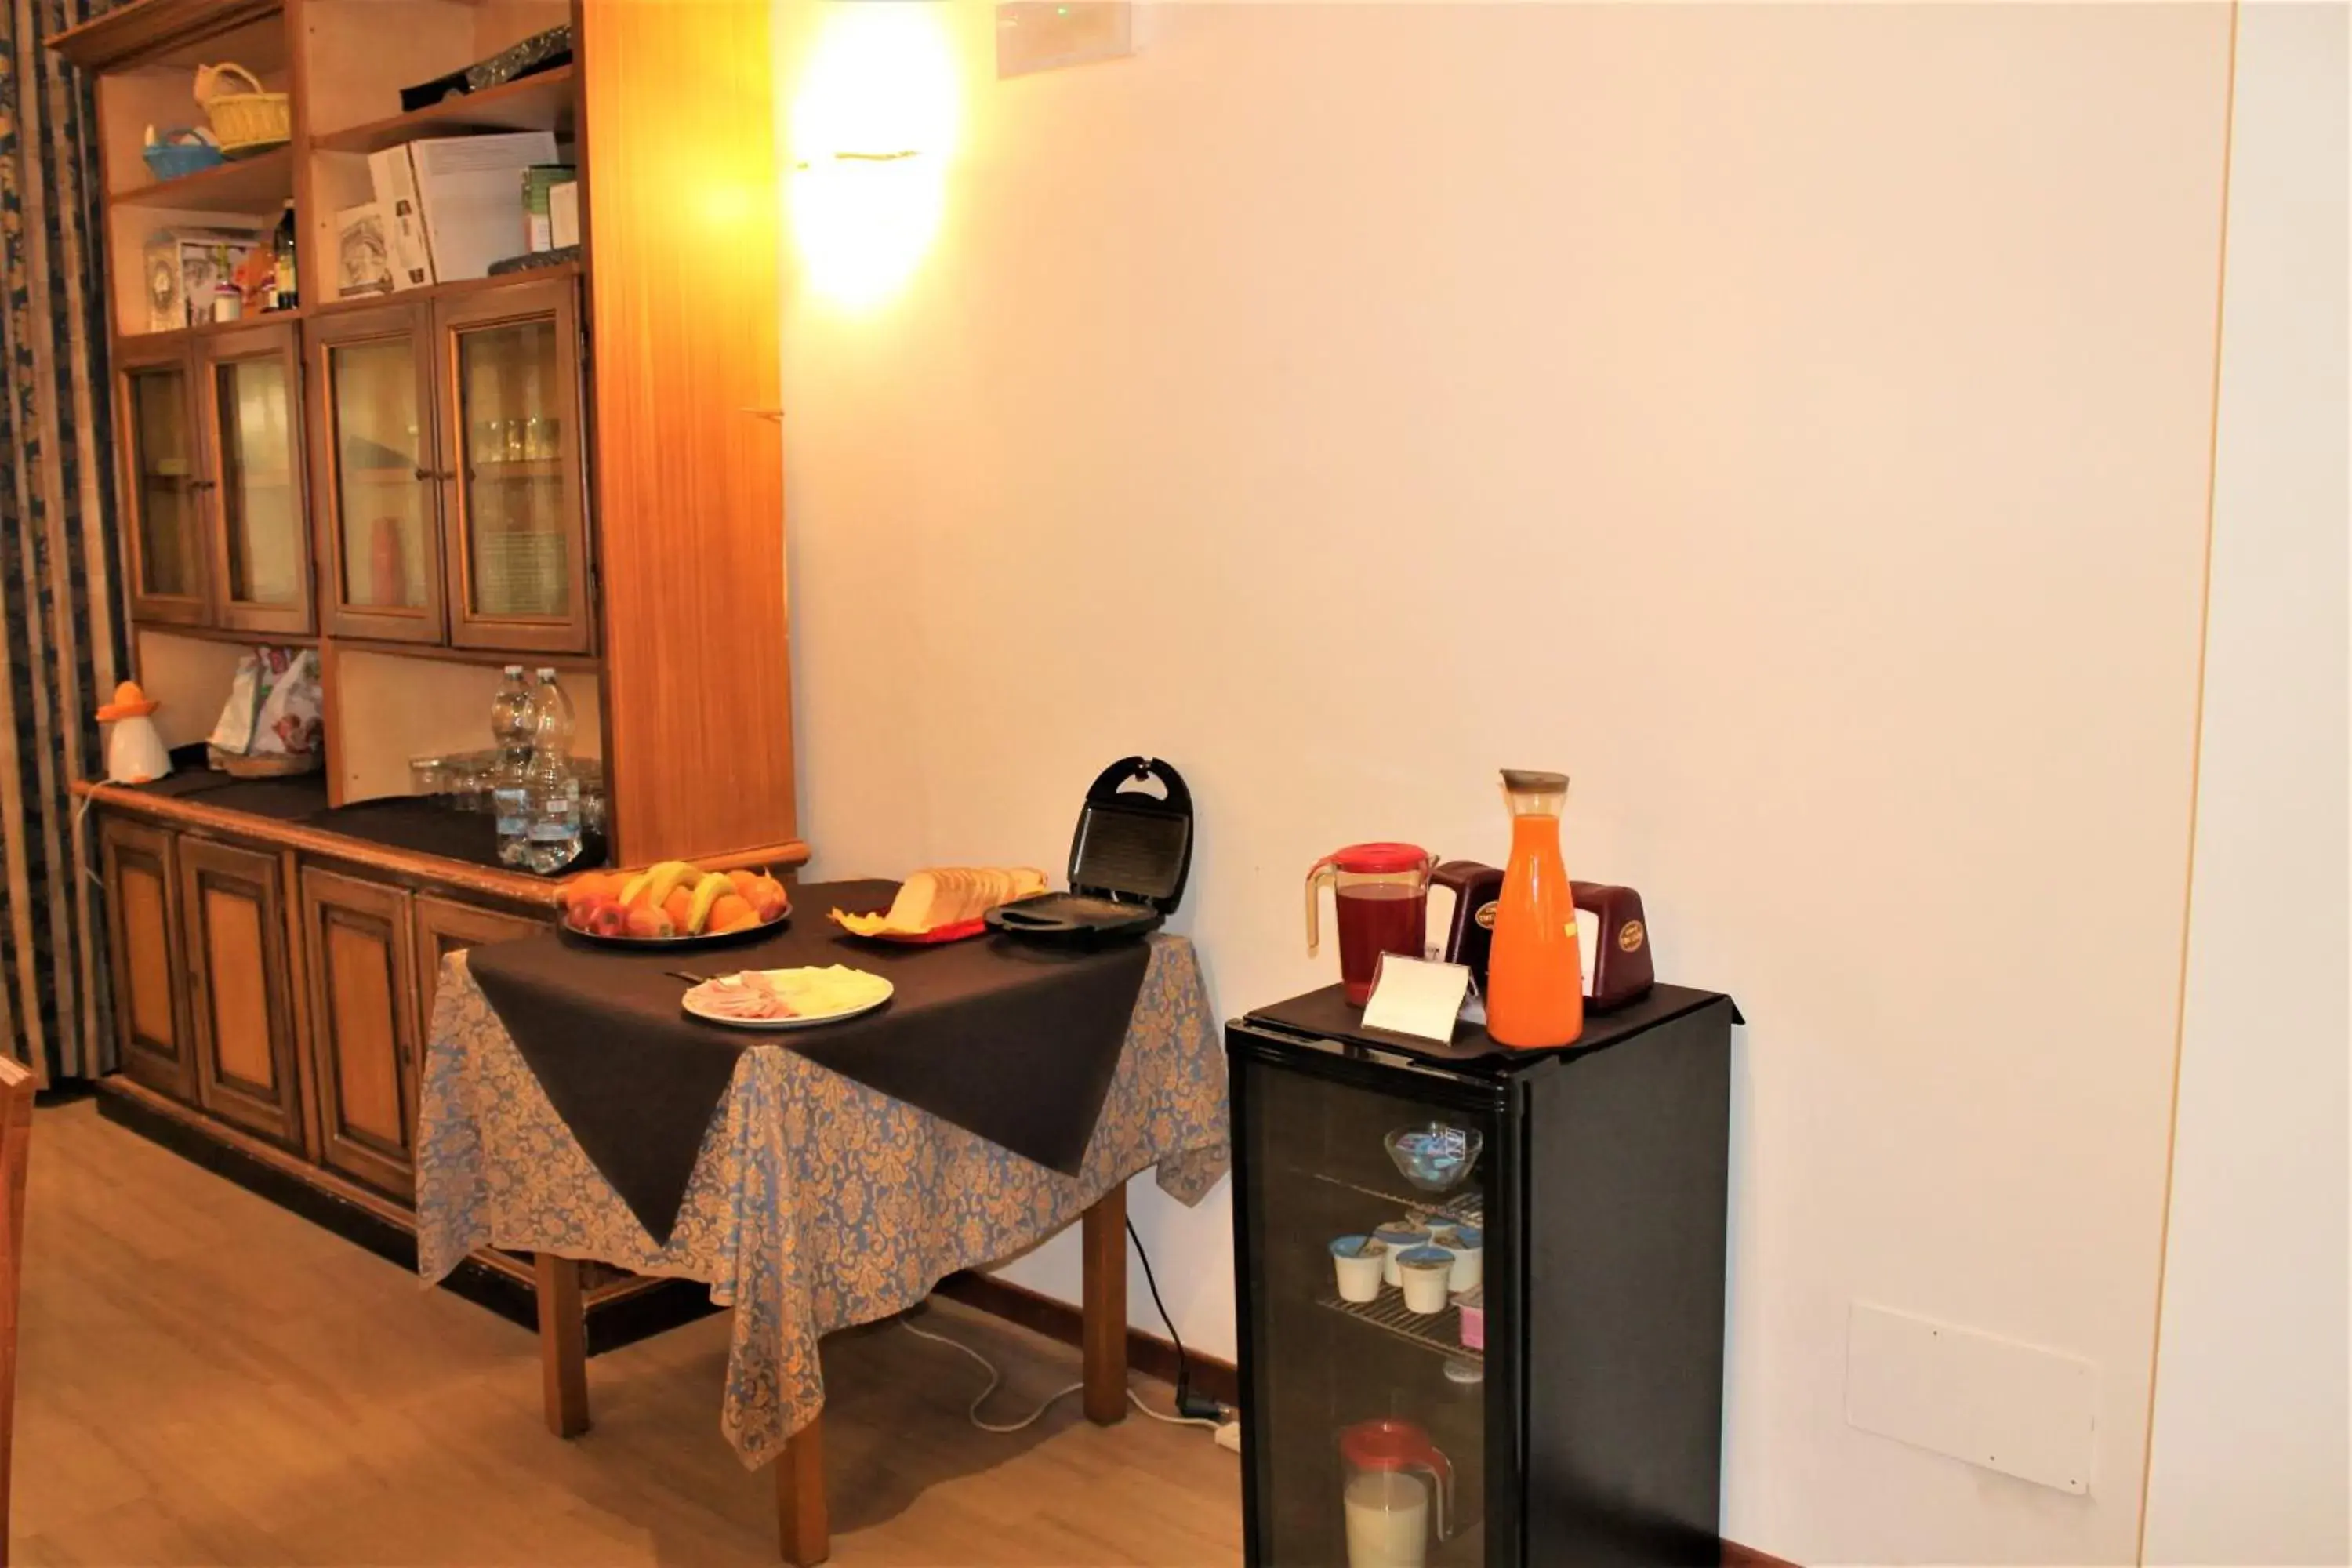 Buffet breakfast in Hotel Santa Lucia